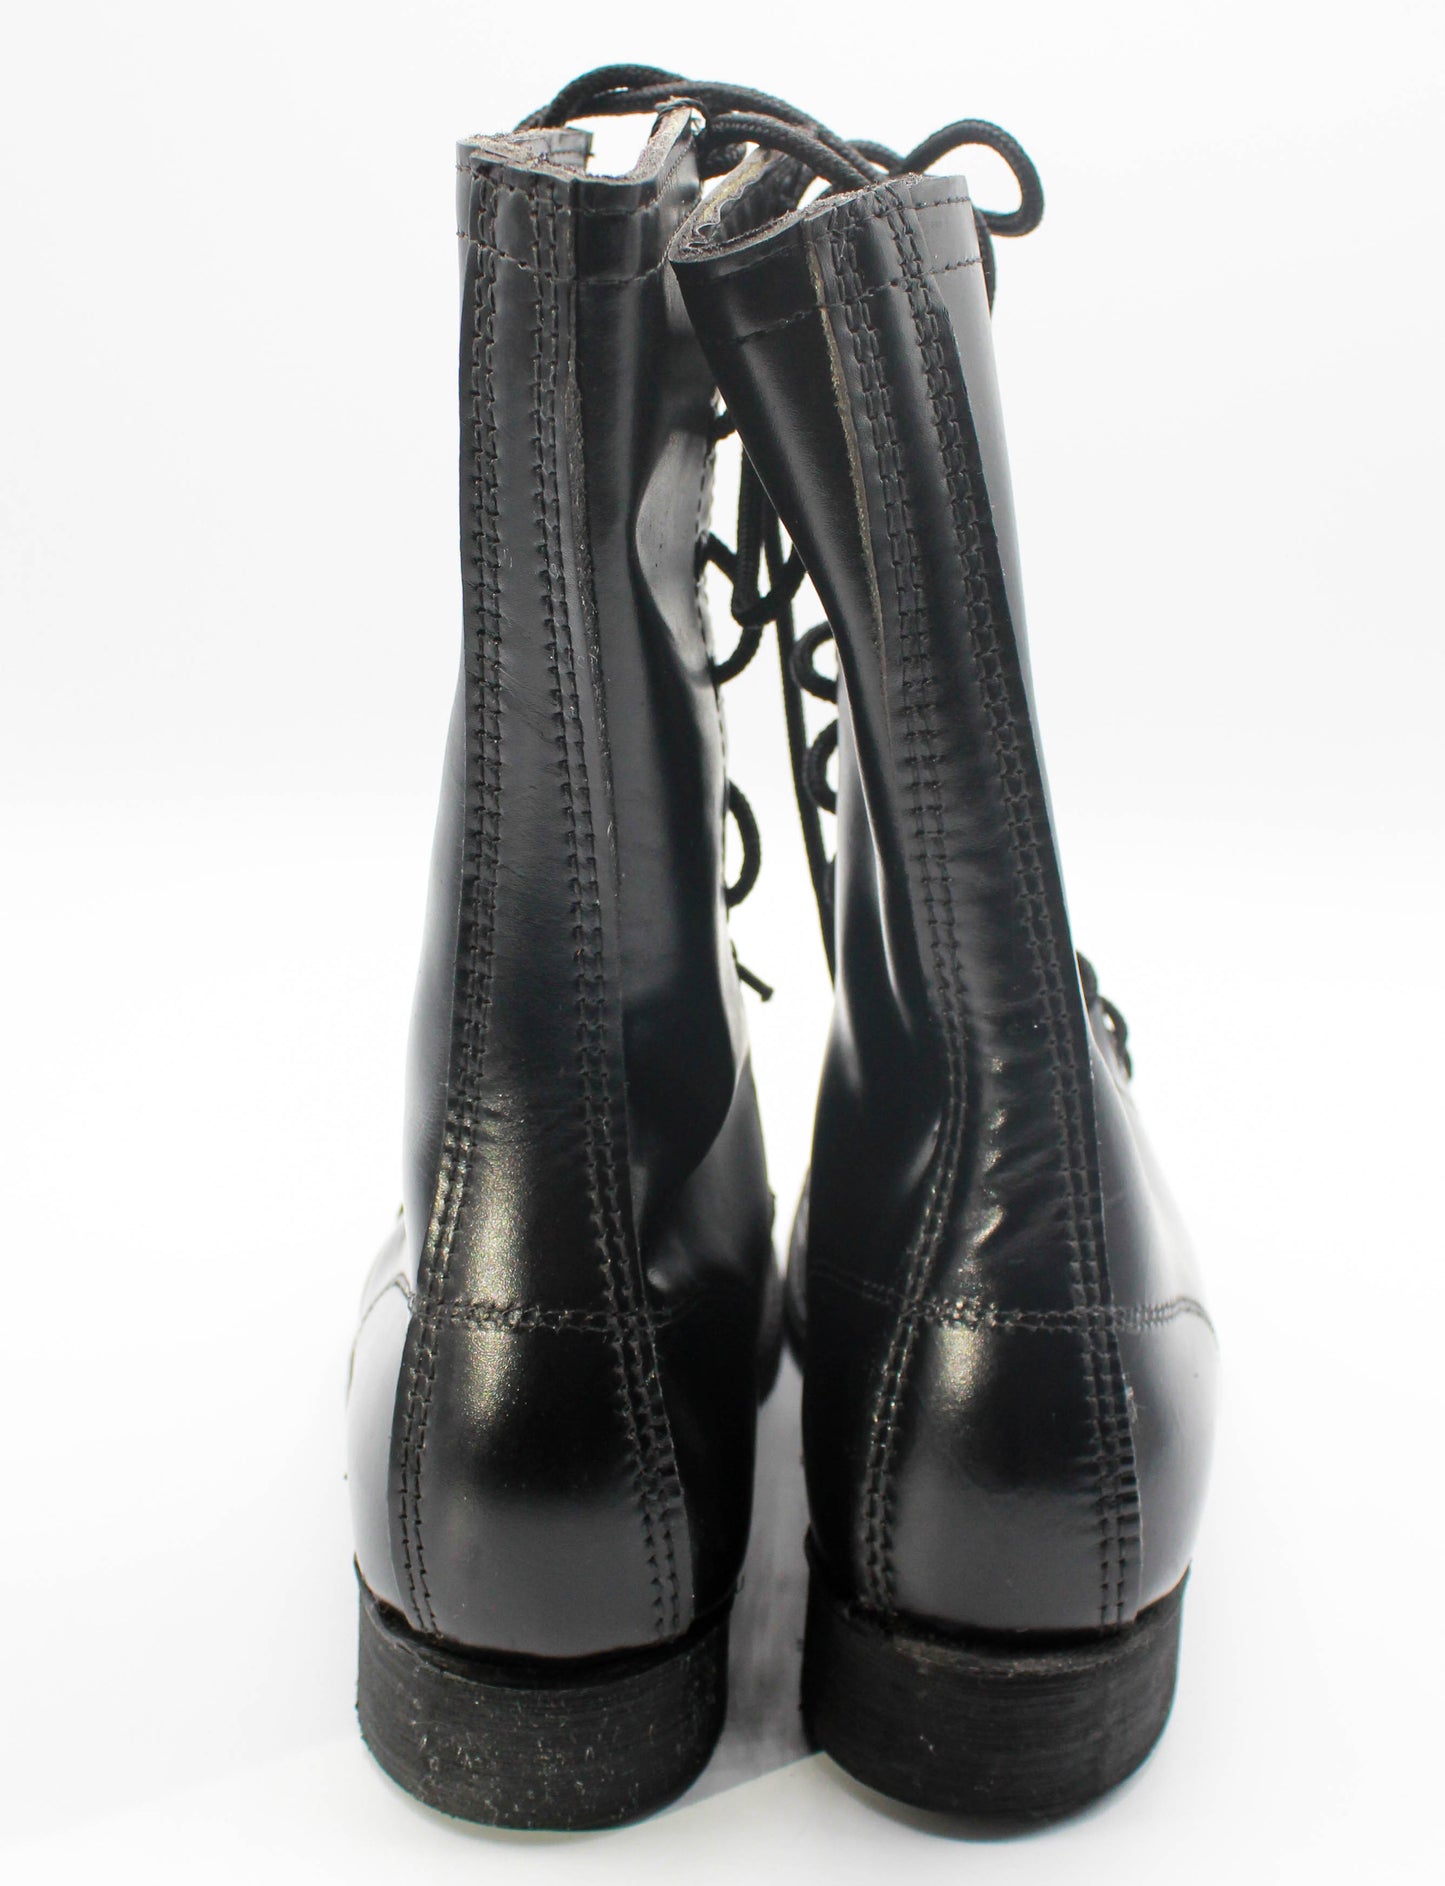 Women's Vintage Jump Boots Leather Combat Biker Dead Stock Black Size 5-6